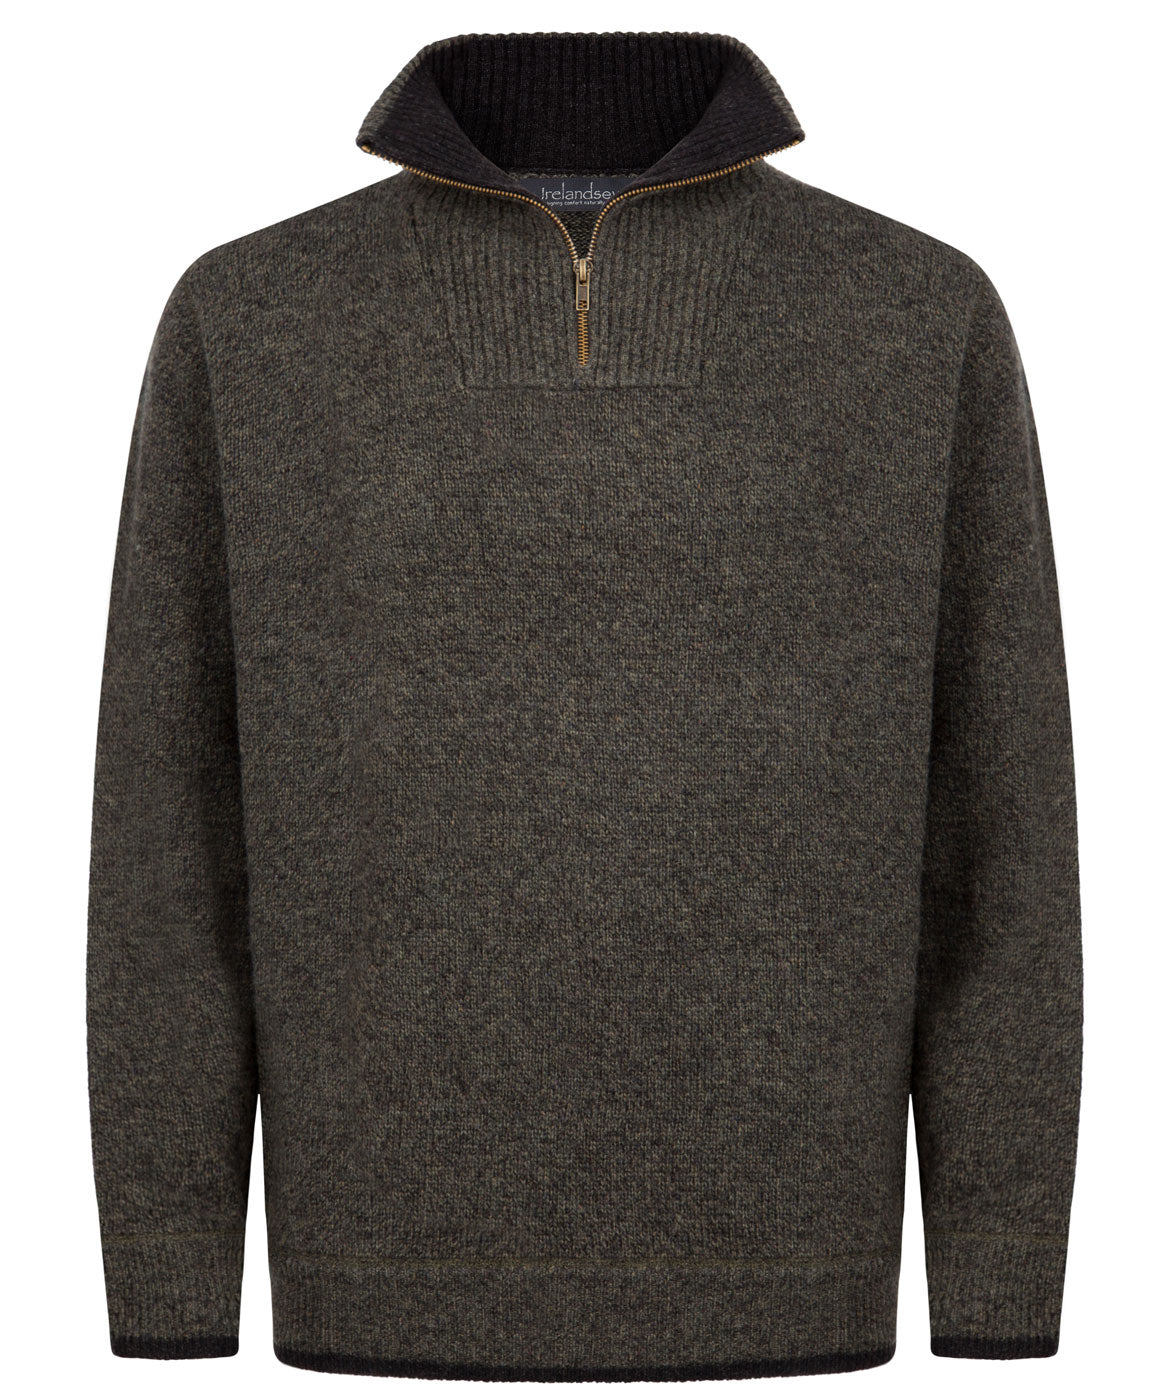 Men's 1/4 Zip Pullover Sweater- Green Marl